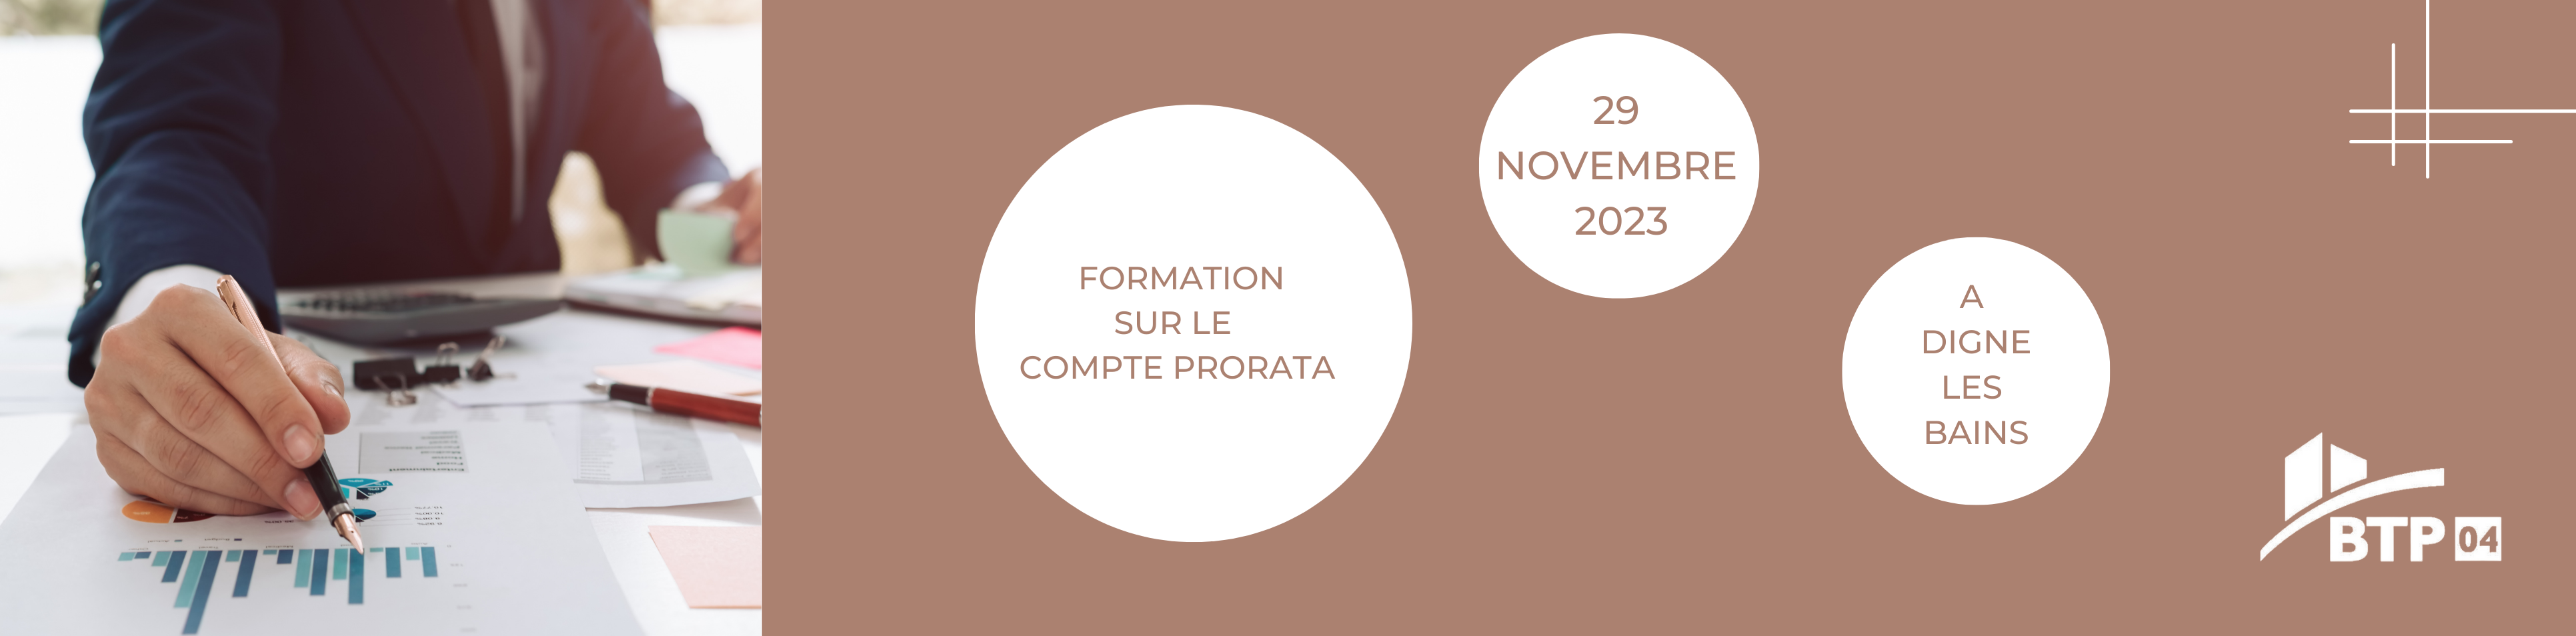 formation-compte-prorata-29-11-2023